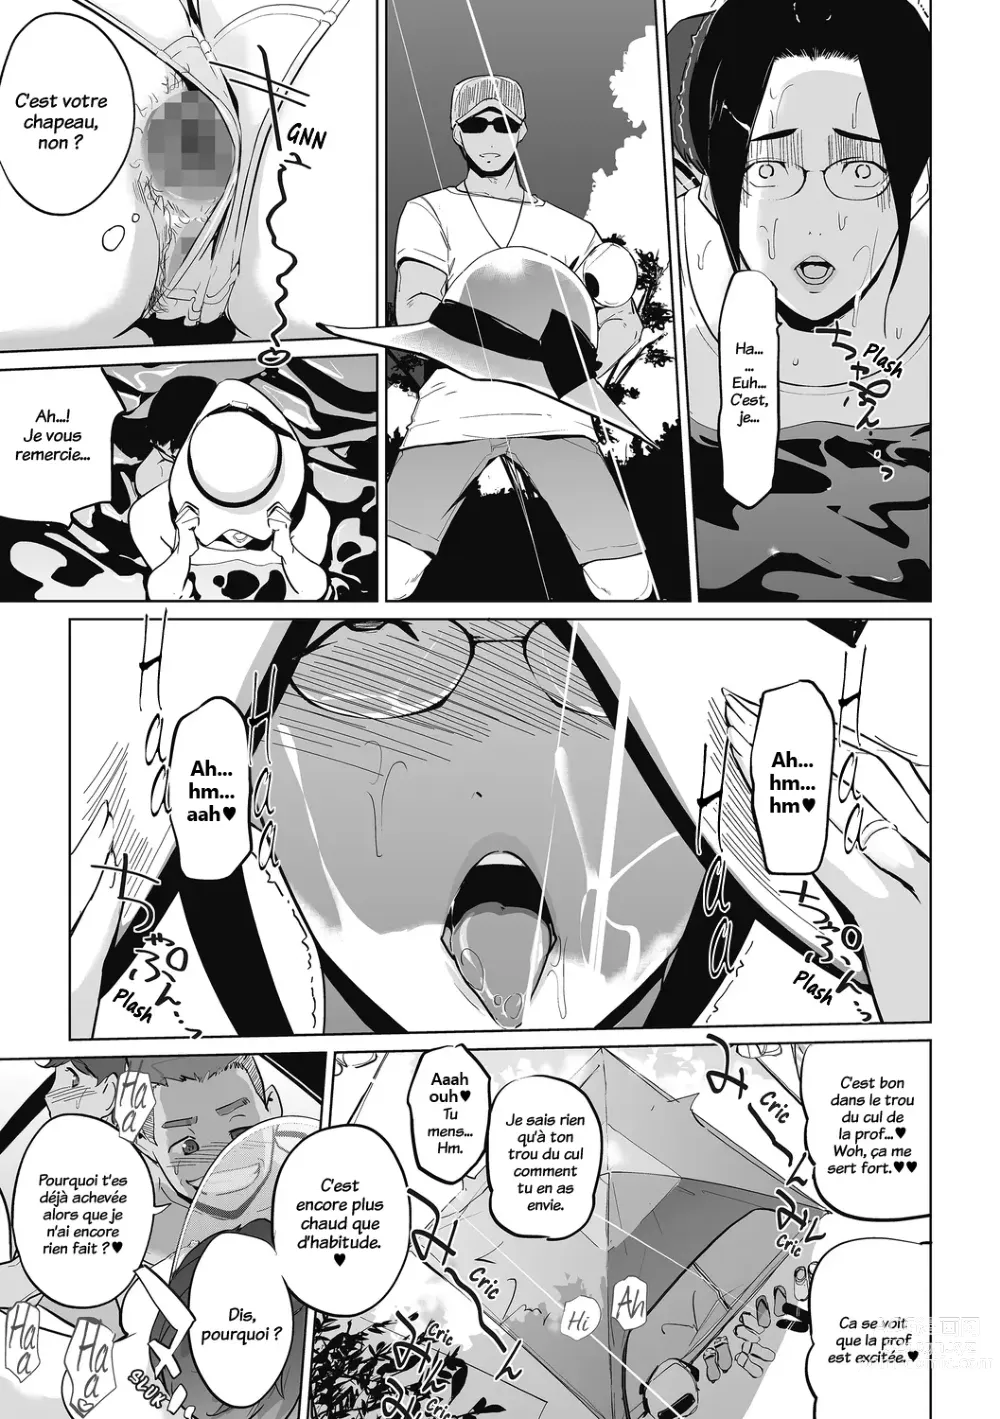 Page 86 of manga Himitsu